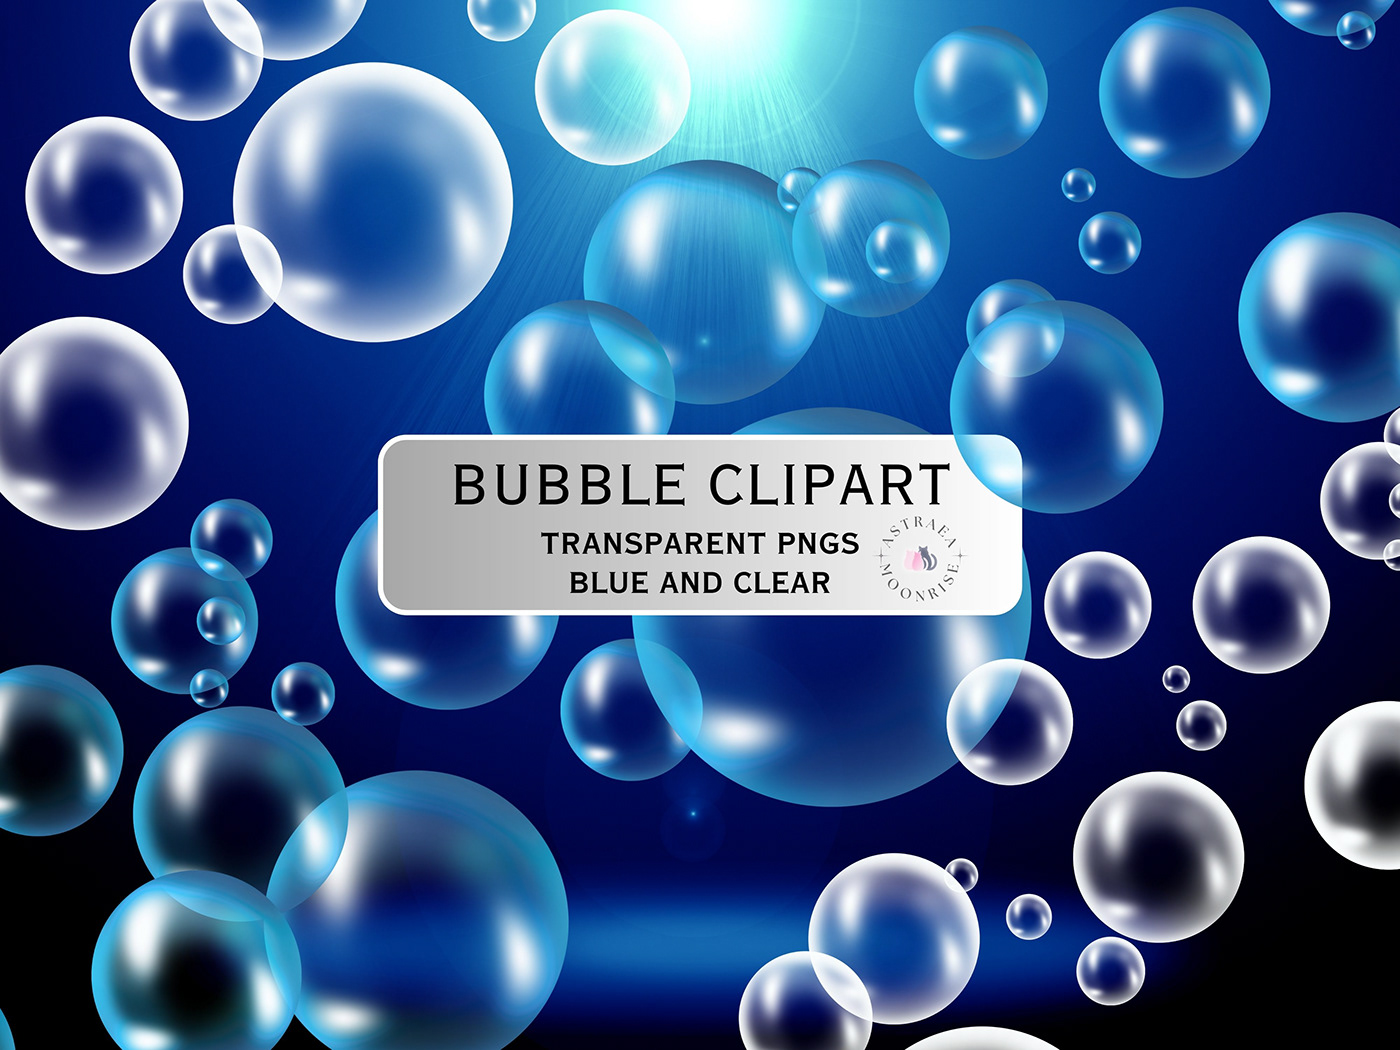 bubbles Transparent png clipart design png bubble blue bubbles Bubble clipart Bubble Overlay Bubble Overlays clear bubbles